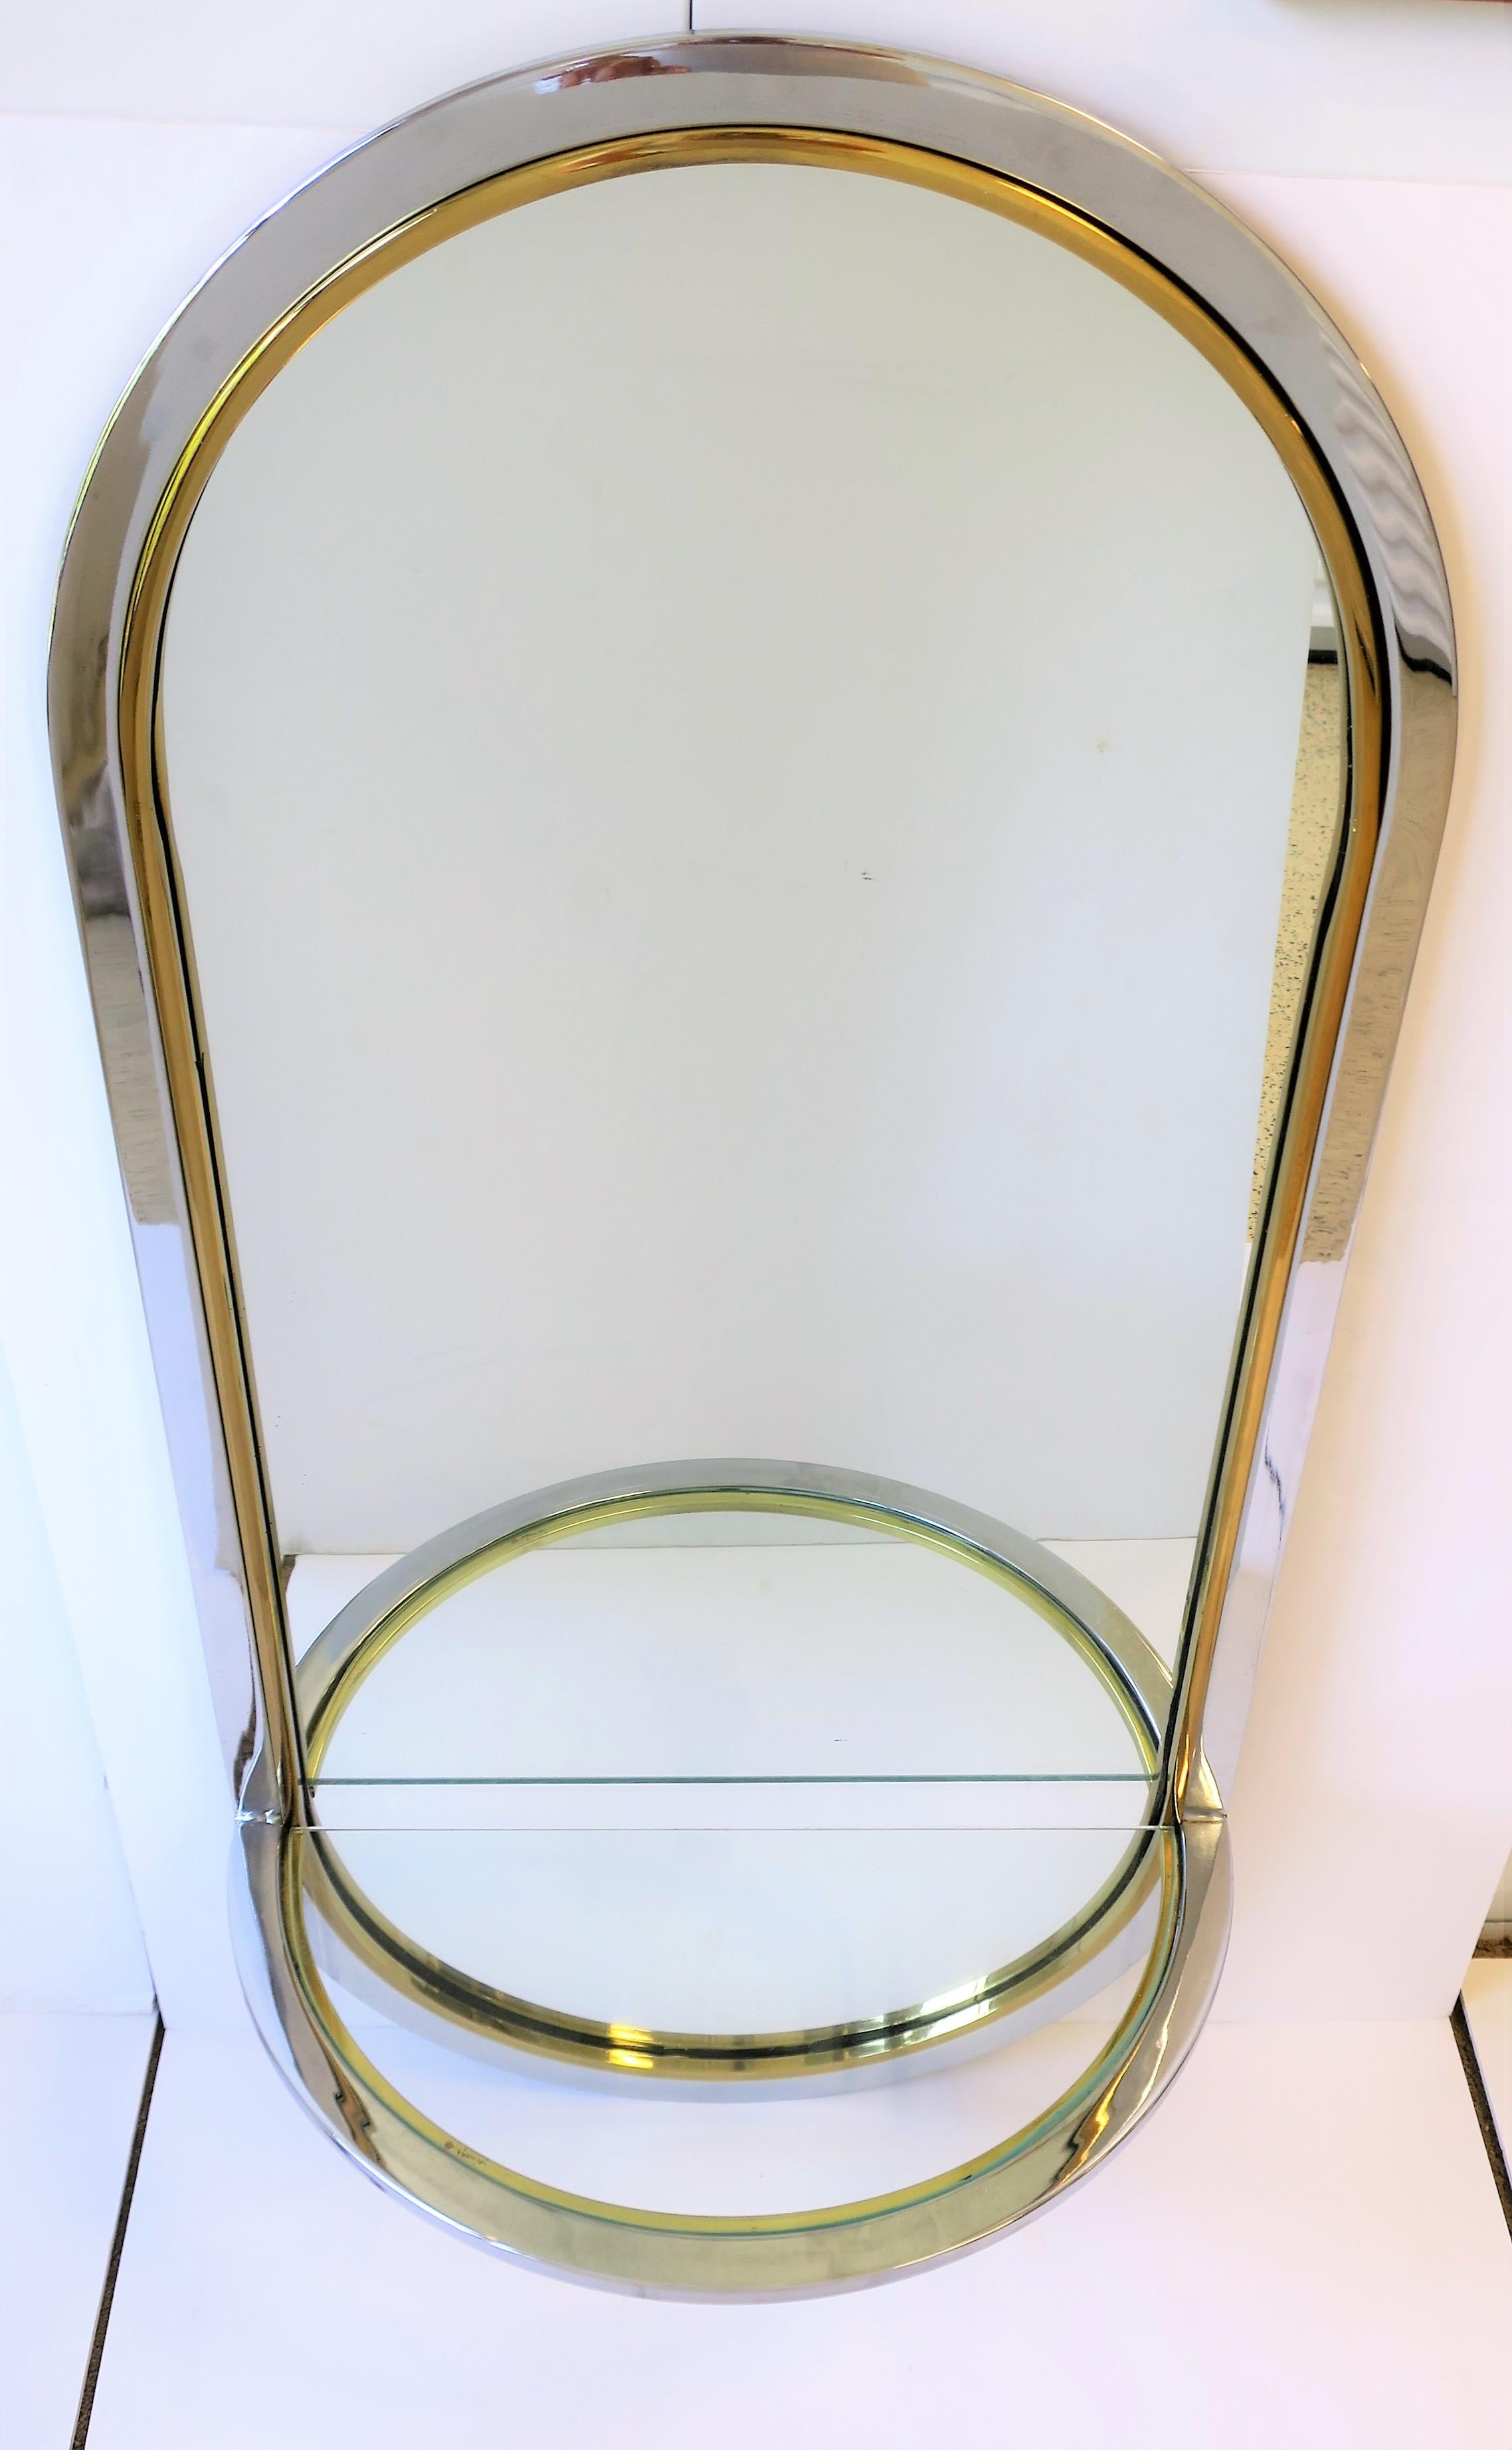 mirror with shelf chrome